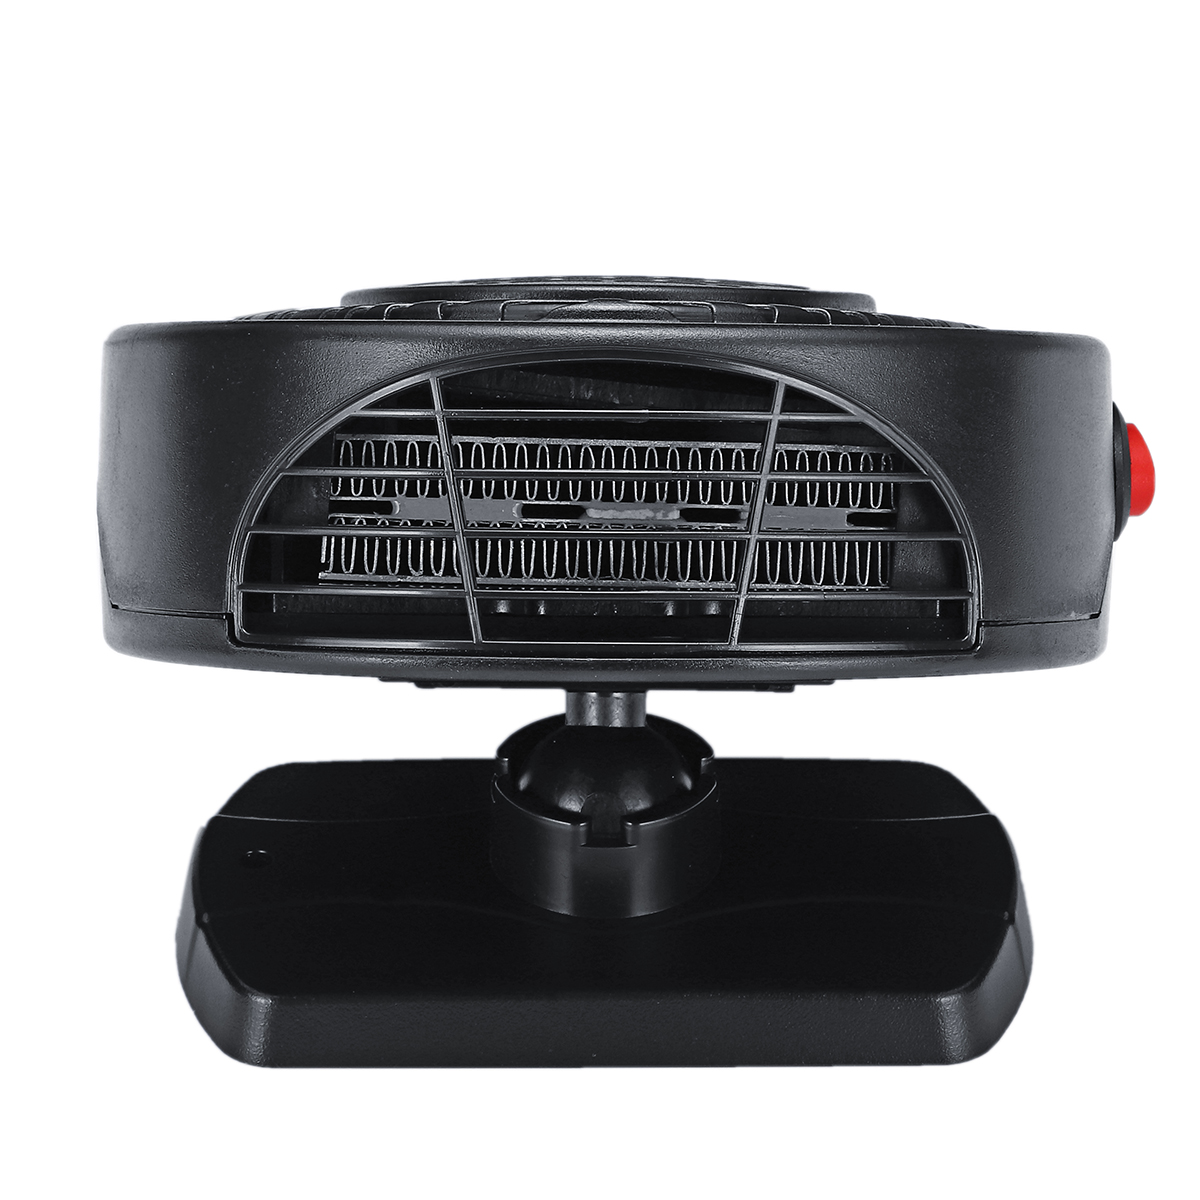 

12V 150W Авто Нагреватель Вентилятор для демистера Отопление Вентилятор охлаждения Обогреватель Теплый воздушный вентиля